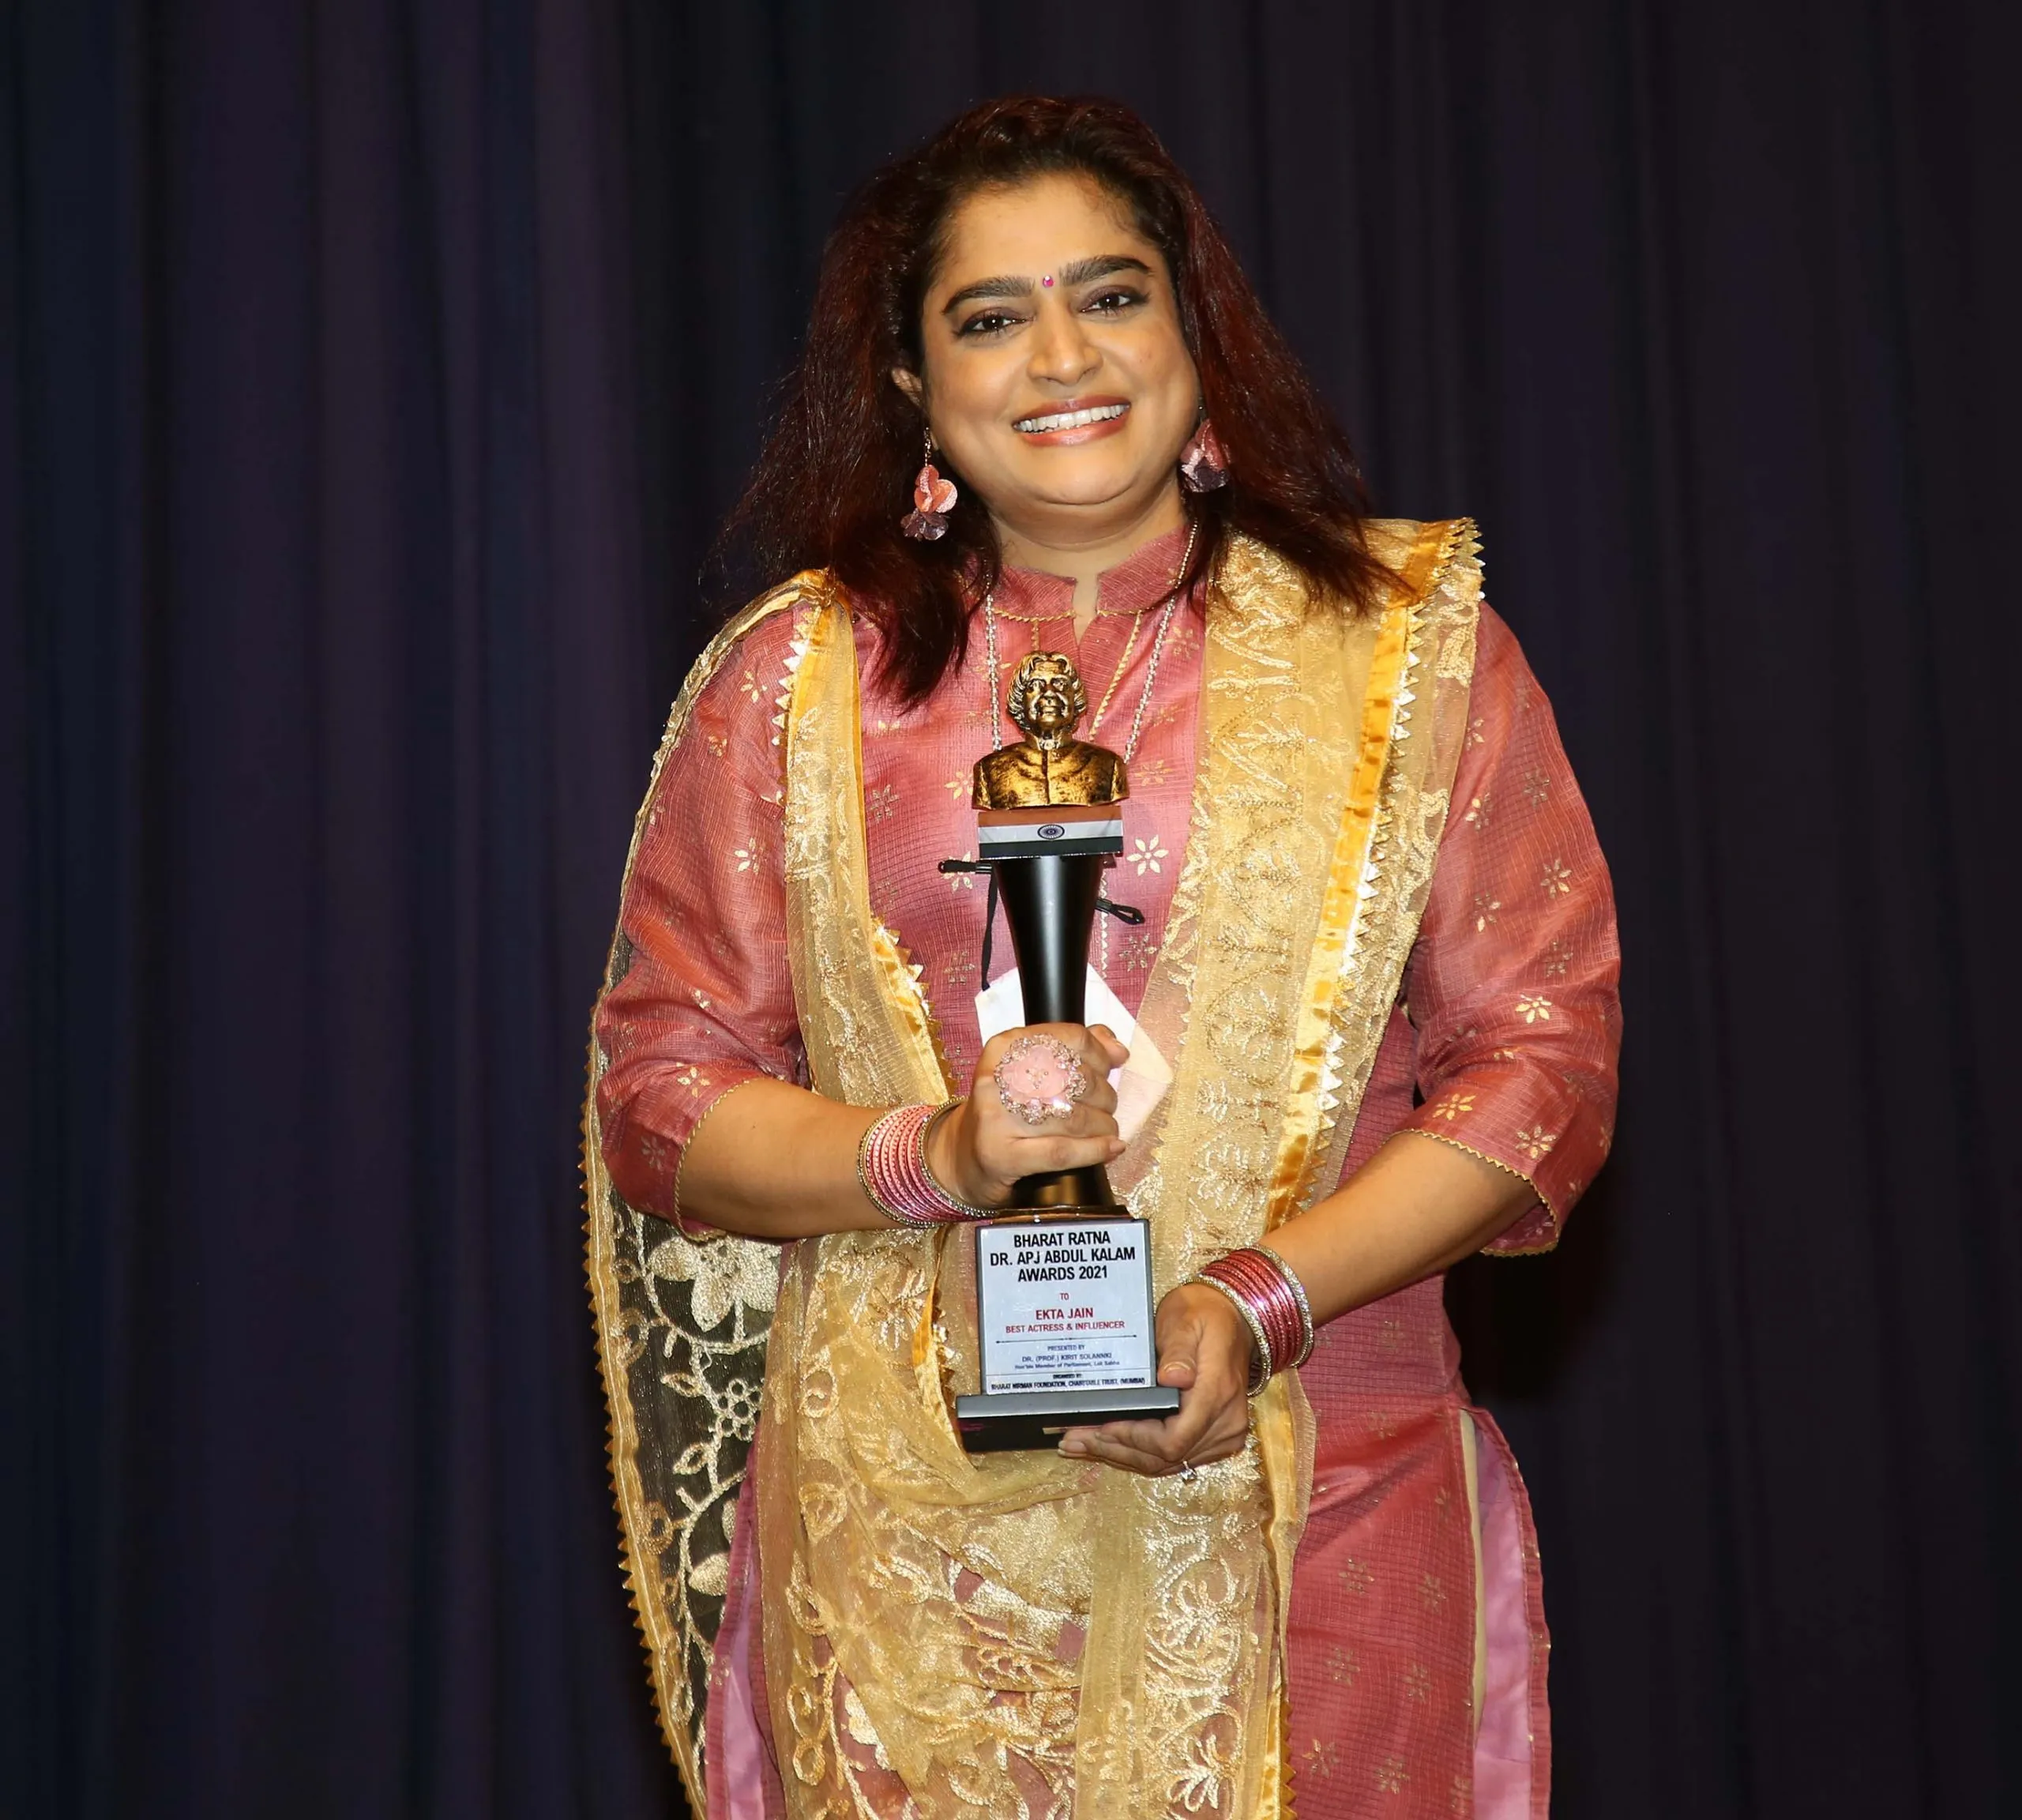 सलमा आगा, उदित नारायण, अनु मलिक, दीपशिखा नागपाल, मधुश्री, निहारिका रायजादा को भारत रत्न डॉ.एपीजे अब्दुल कलाम पुरस्कार से नवाजा गया